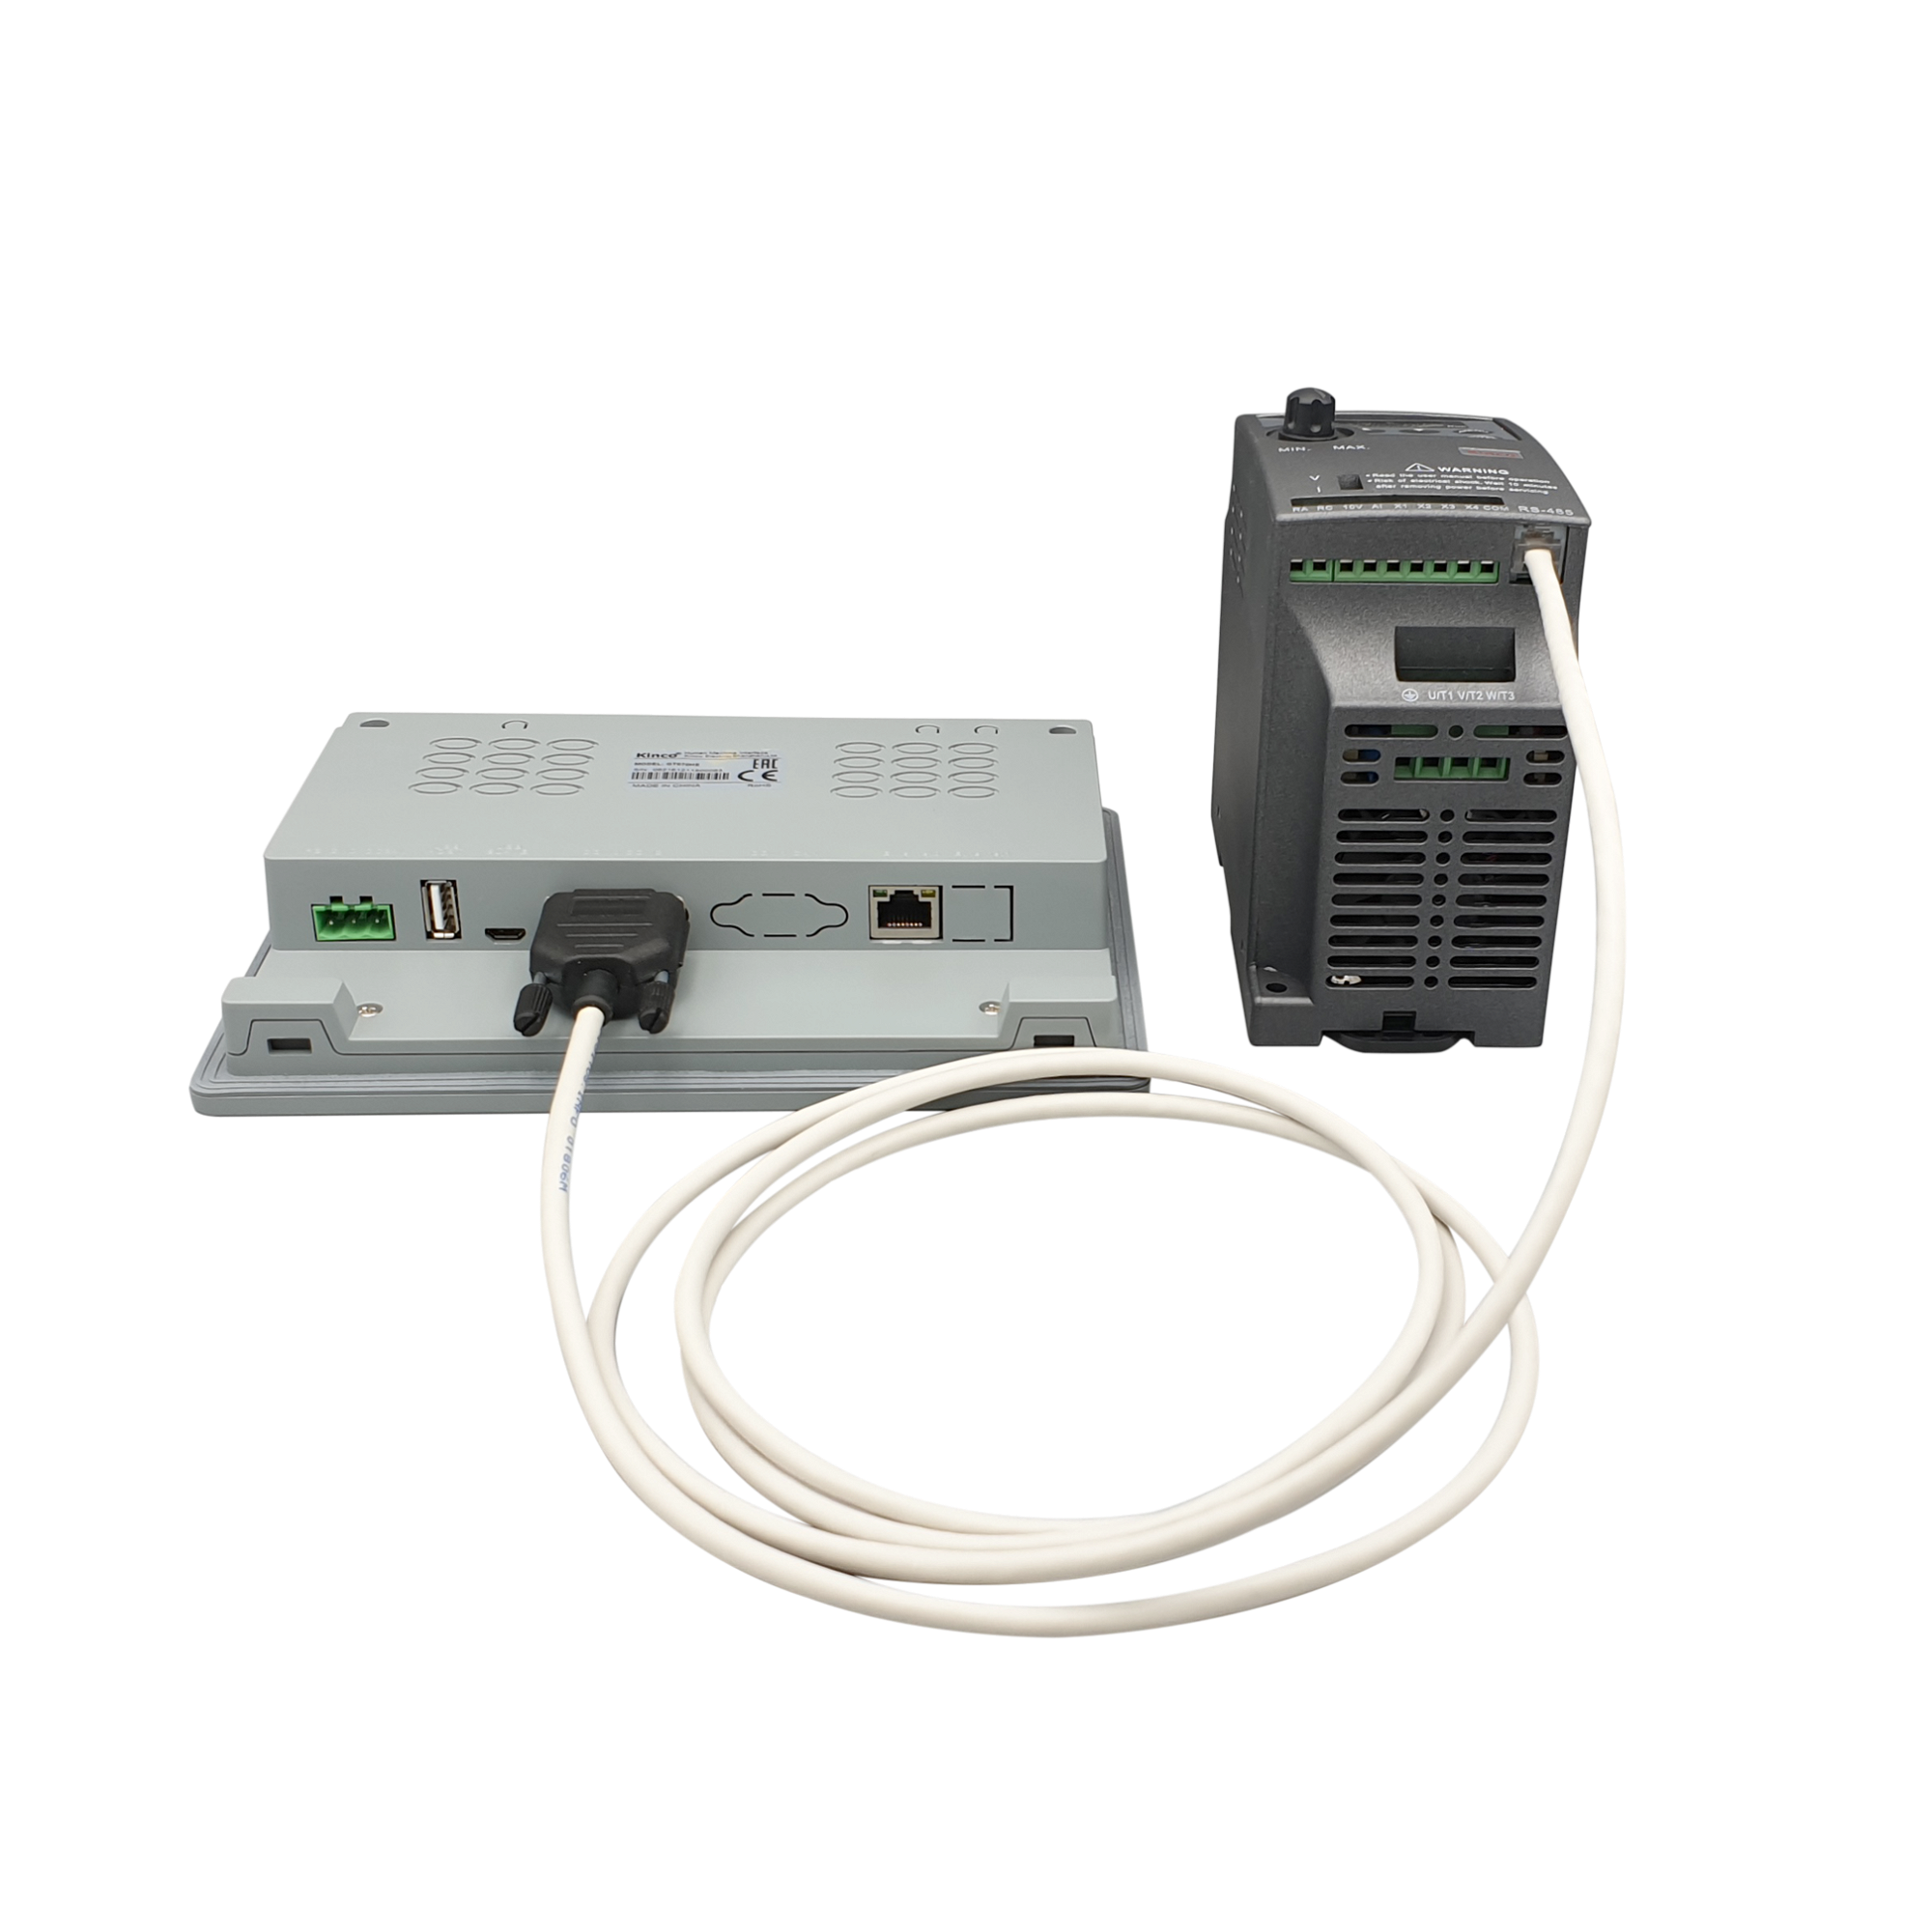 Serielles Verbindungskabel (RS-485) für Kinco CV20-Frequenzumrichter und Kinco HMI